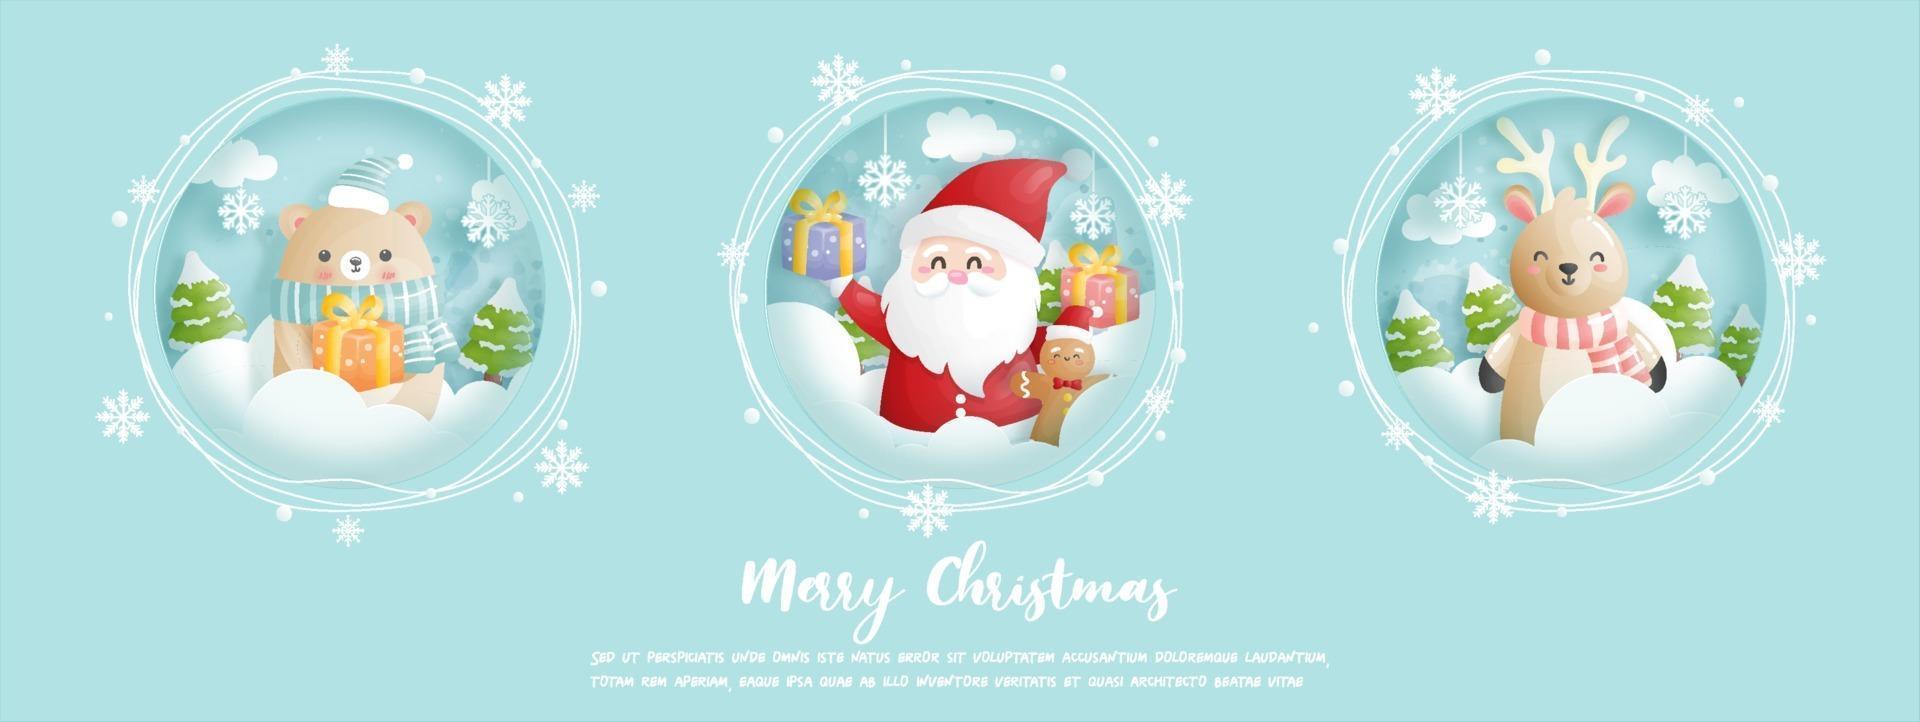 Weihnachtskarte, Feiern mit süßem Weihnachtsmann vektor